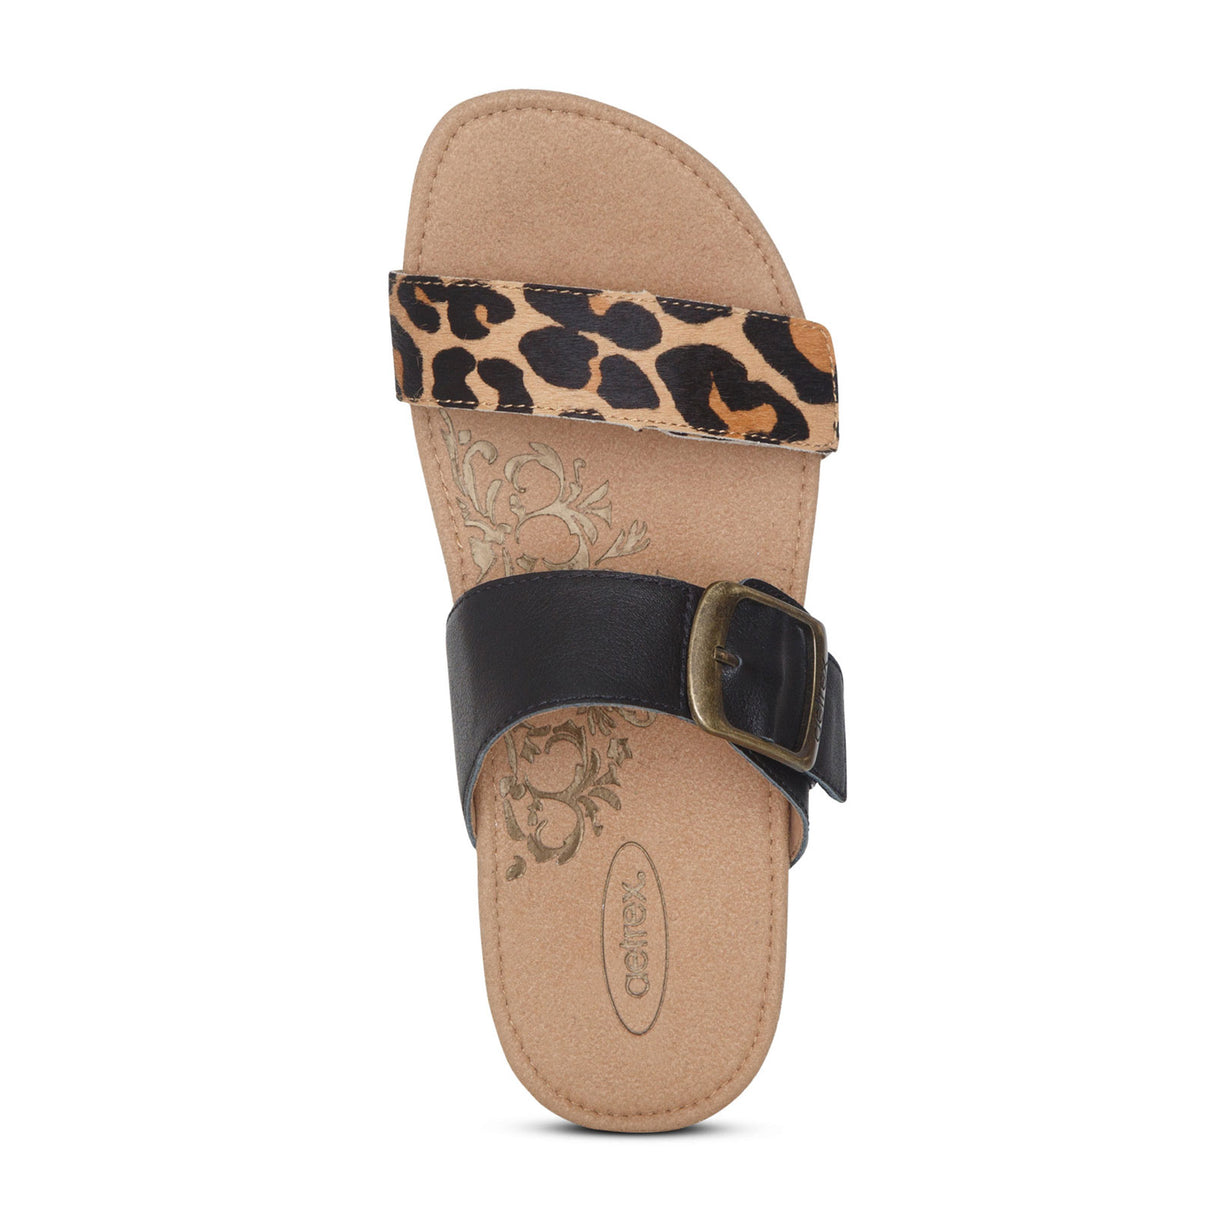 Aetrex Daisy Slide Sandal (Women) - Leopard Leather Sandals - Slide - The Heel Shoe Fitters